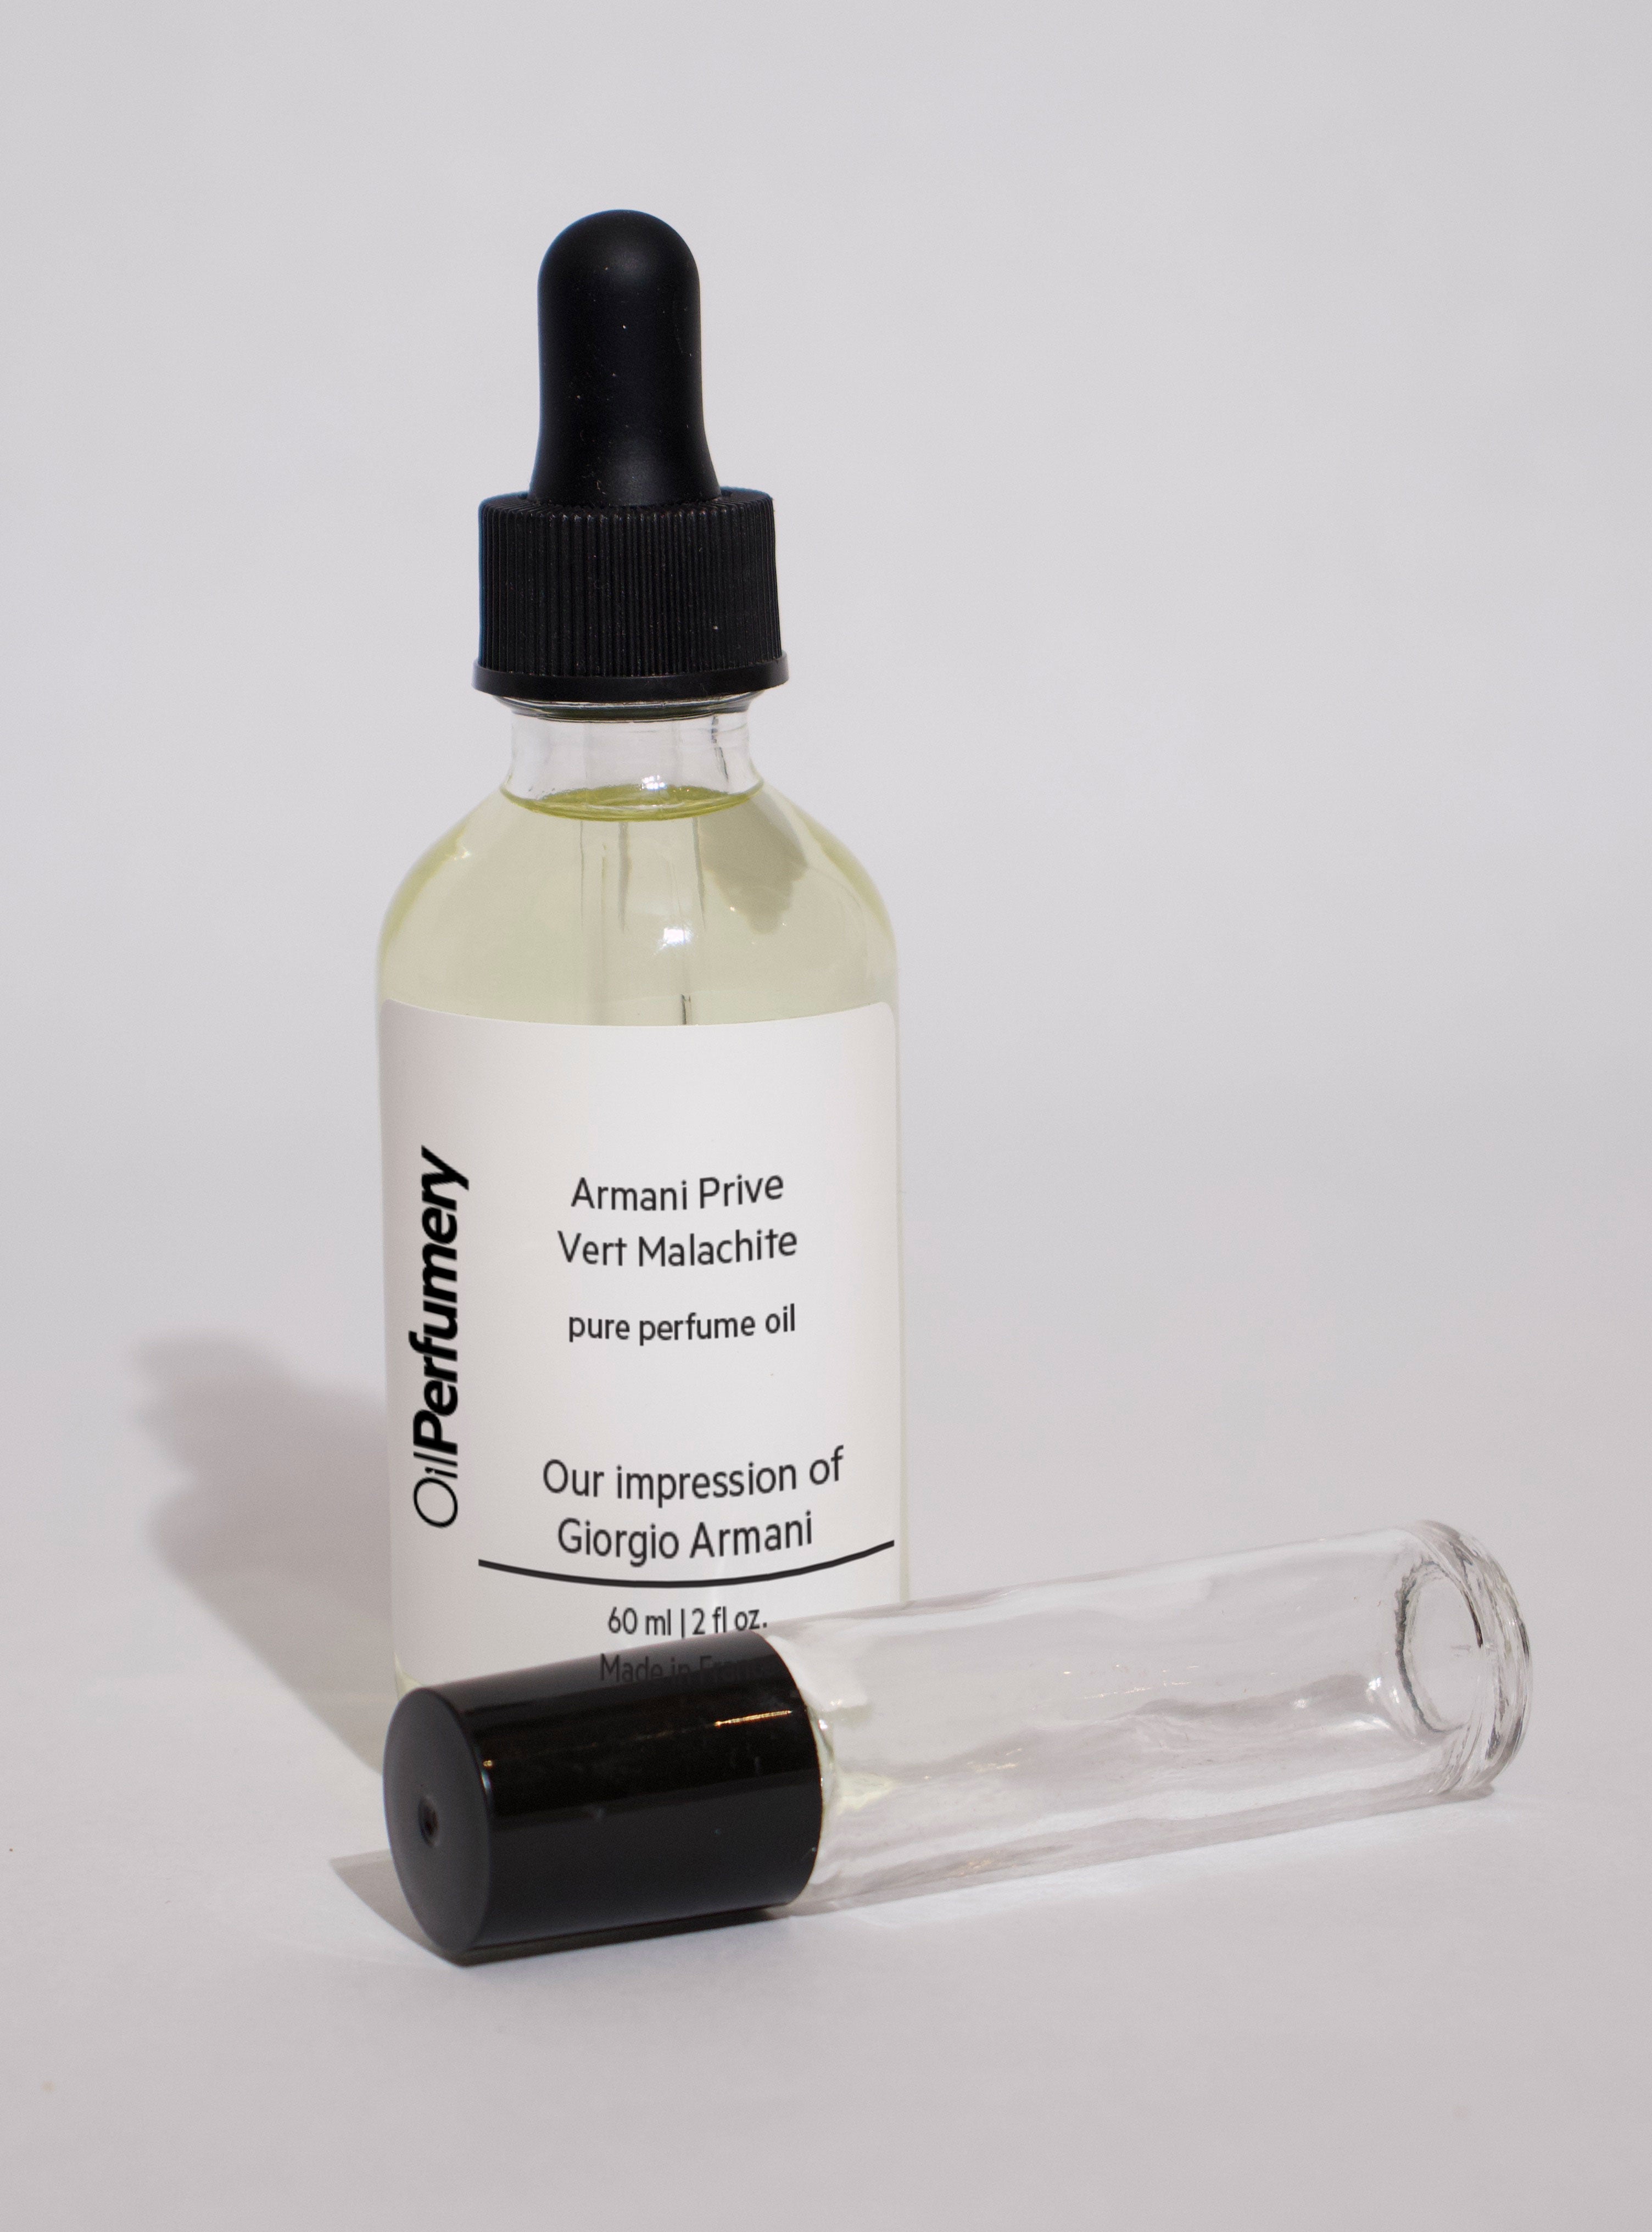 Oil Perfumery Impression of Giorgio Armani - Armani Prive Vert Malachite